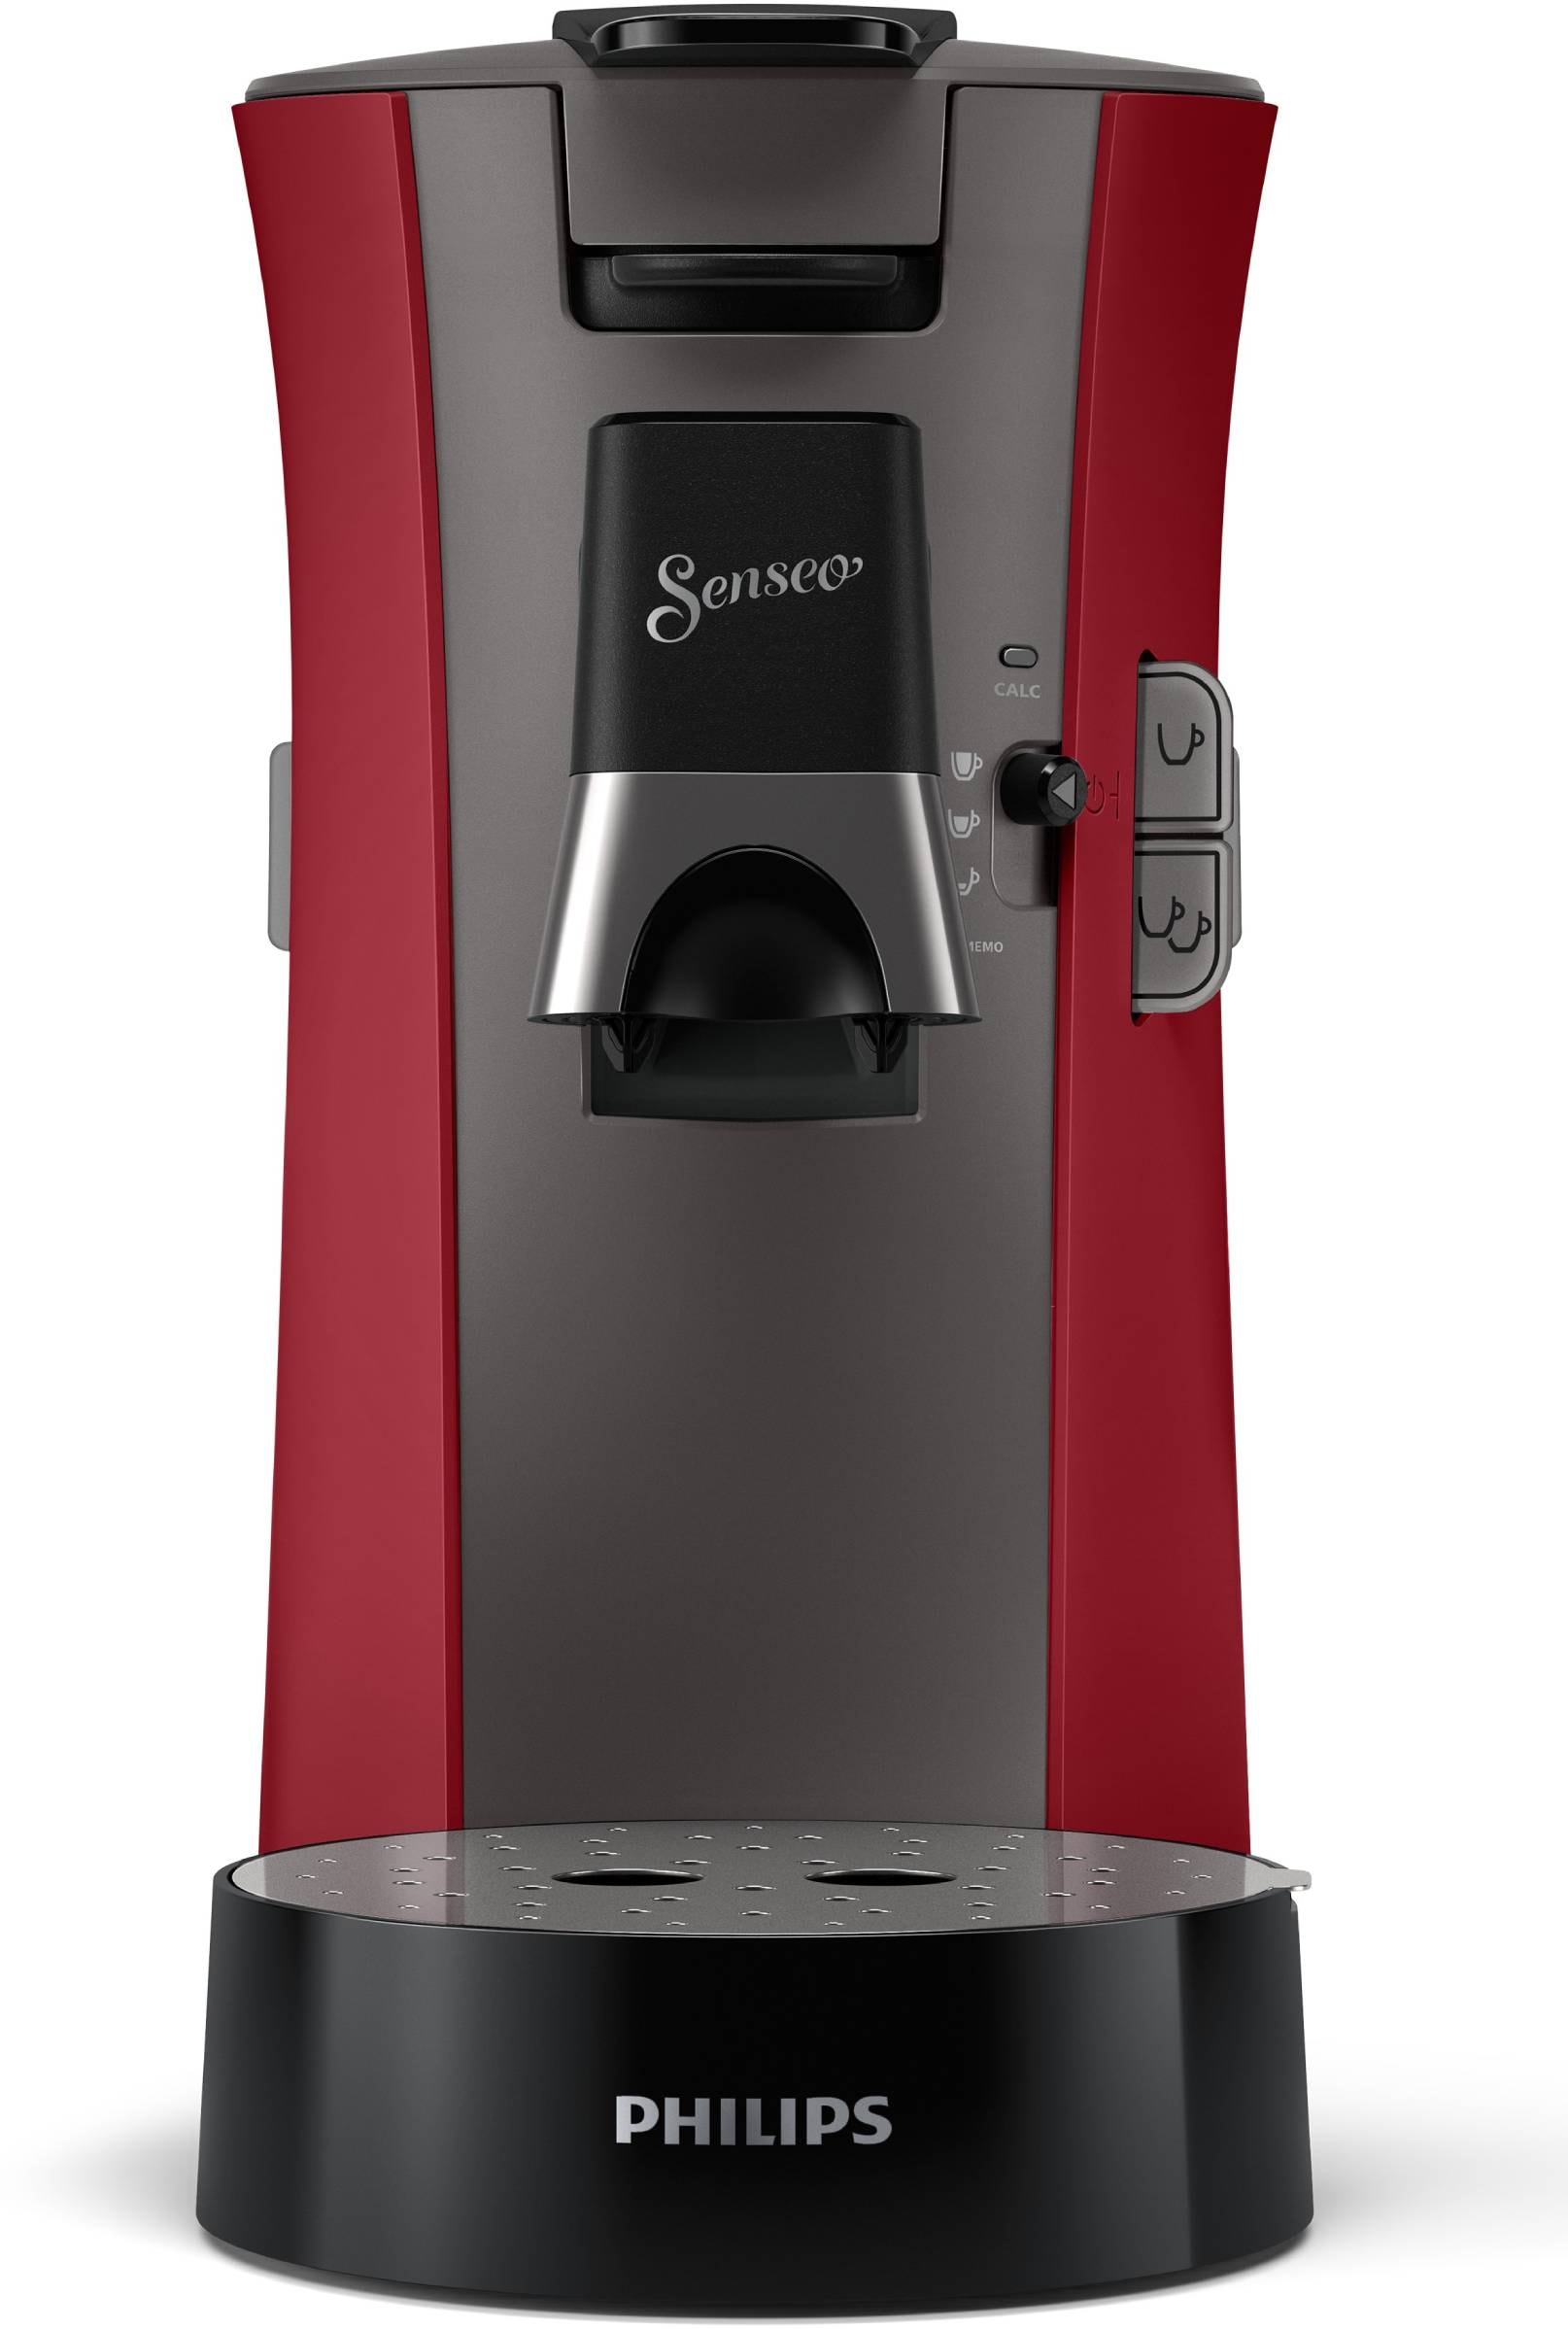 Promo Senseo select machine à café csa240 rouge chez Géant Casino